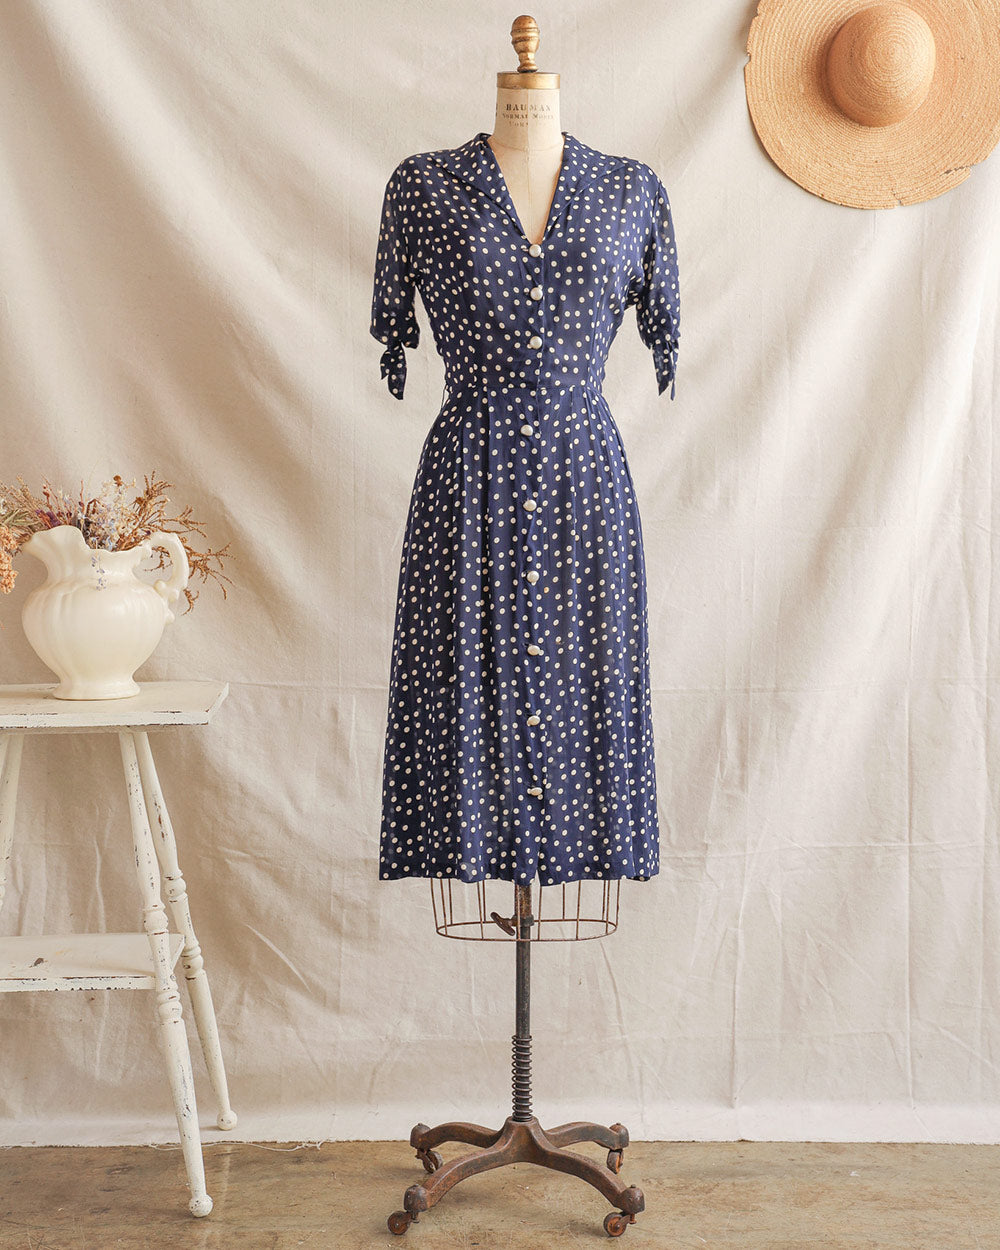 1940 dress